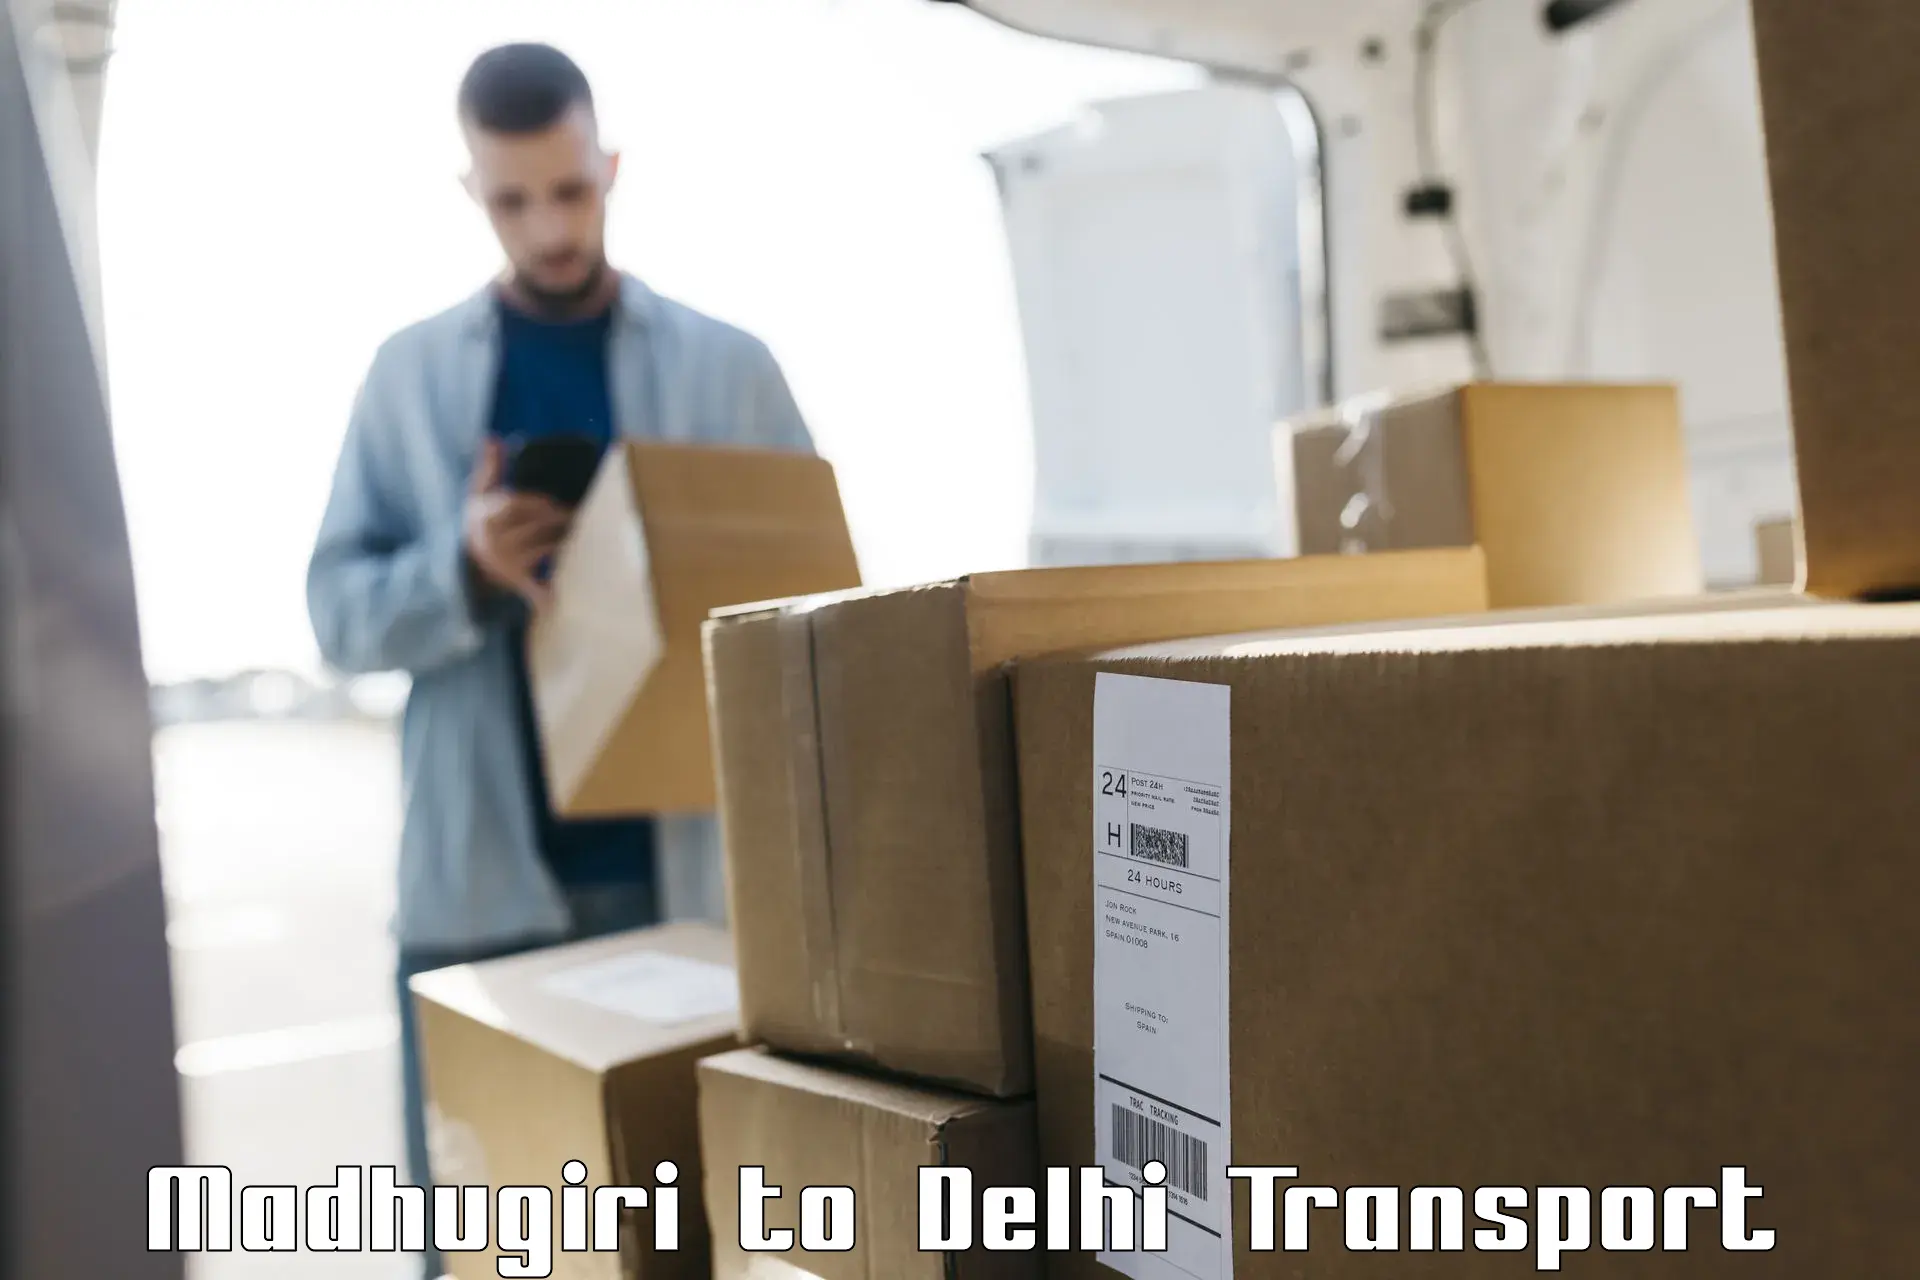 Interstate transport services Madhugiri to NIT Delhi